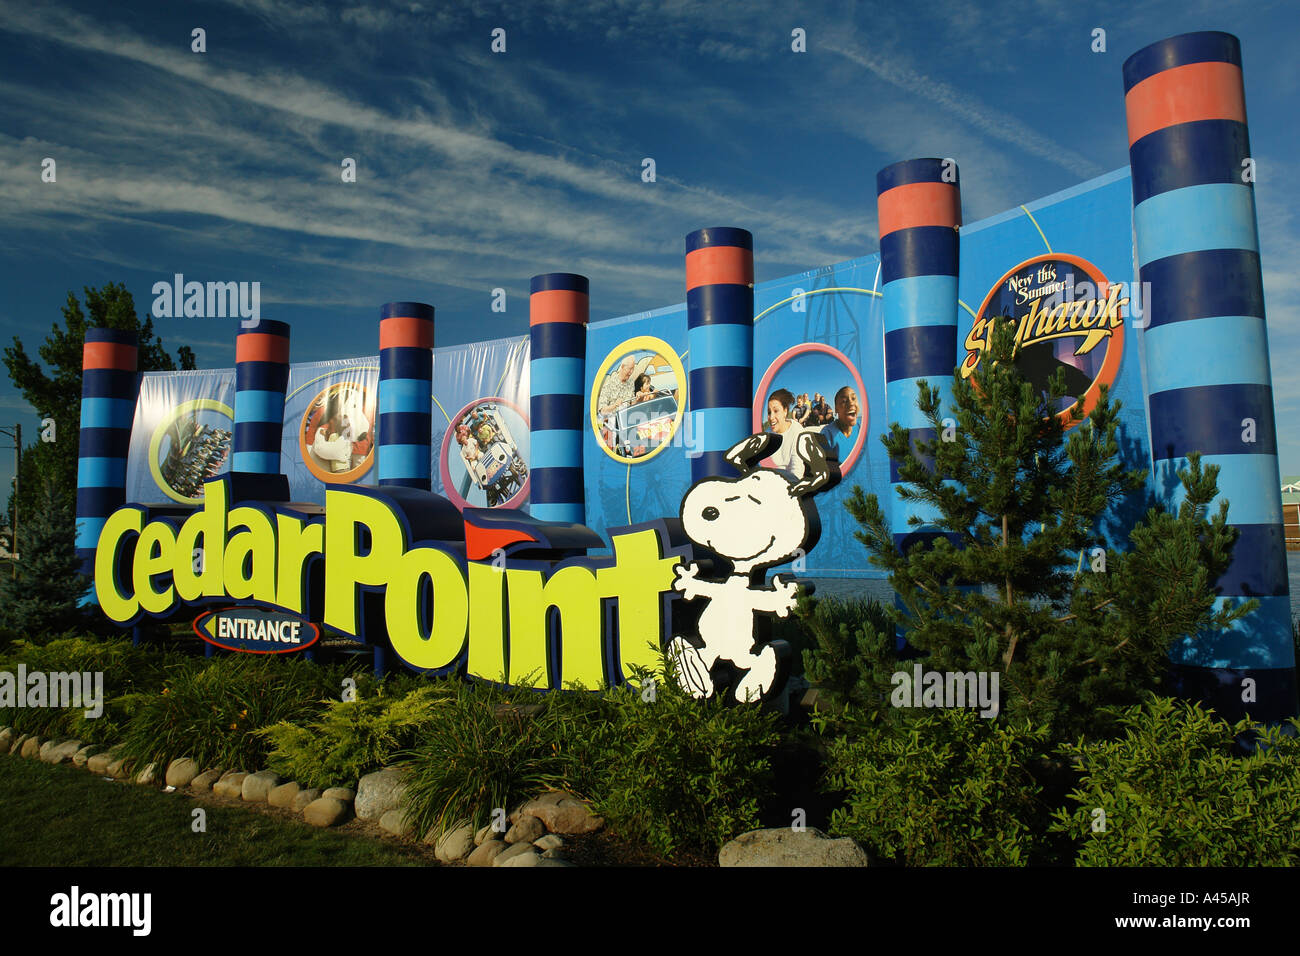 AJD57779, Sandusky, OH, Ohio, Cedar Point, Amusement Park, entrance sign Stock Photo